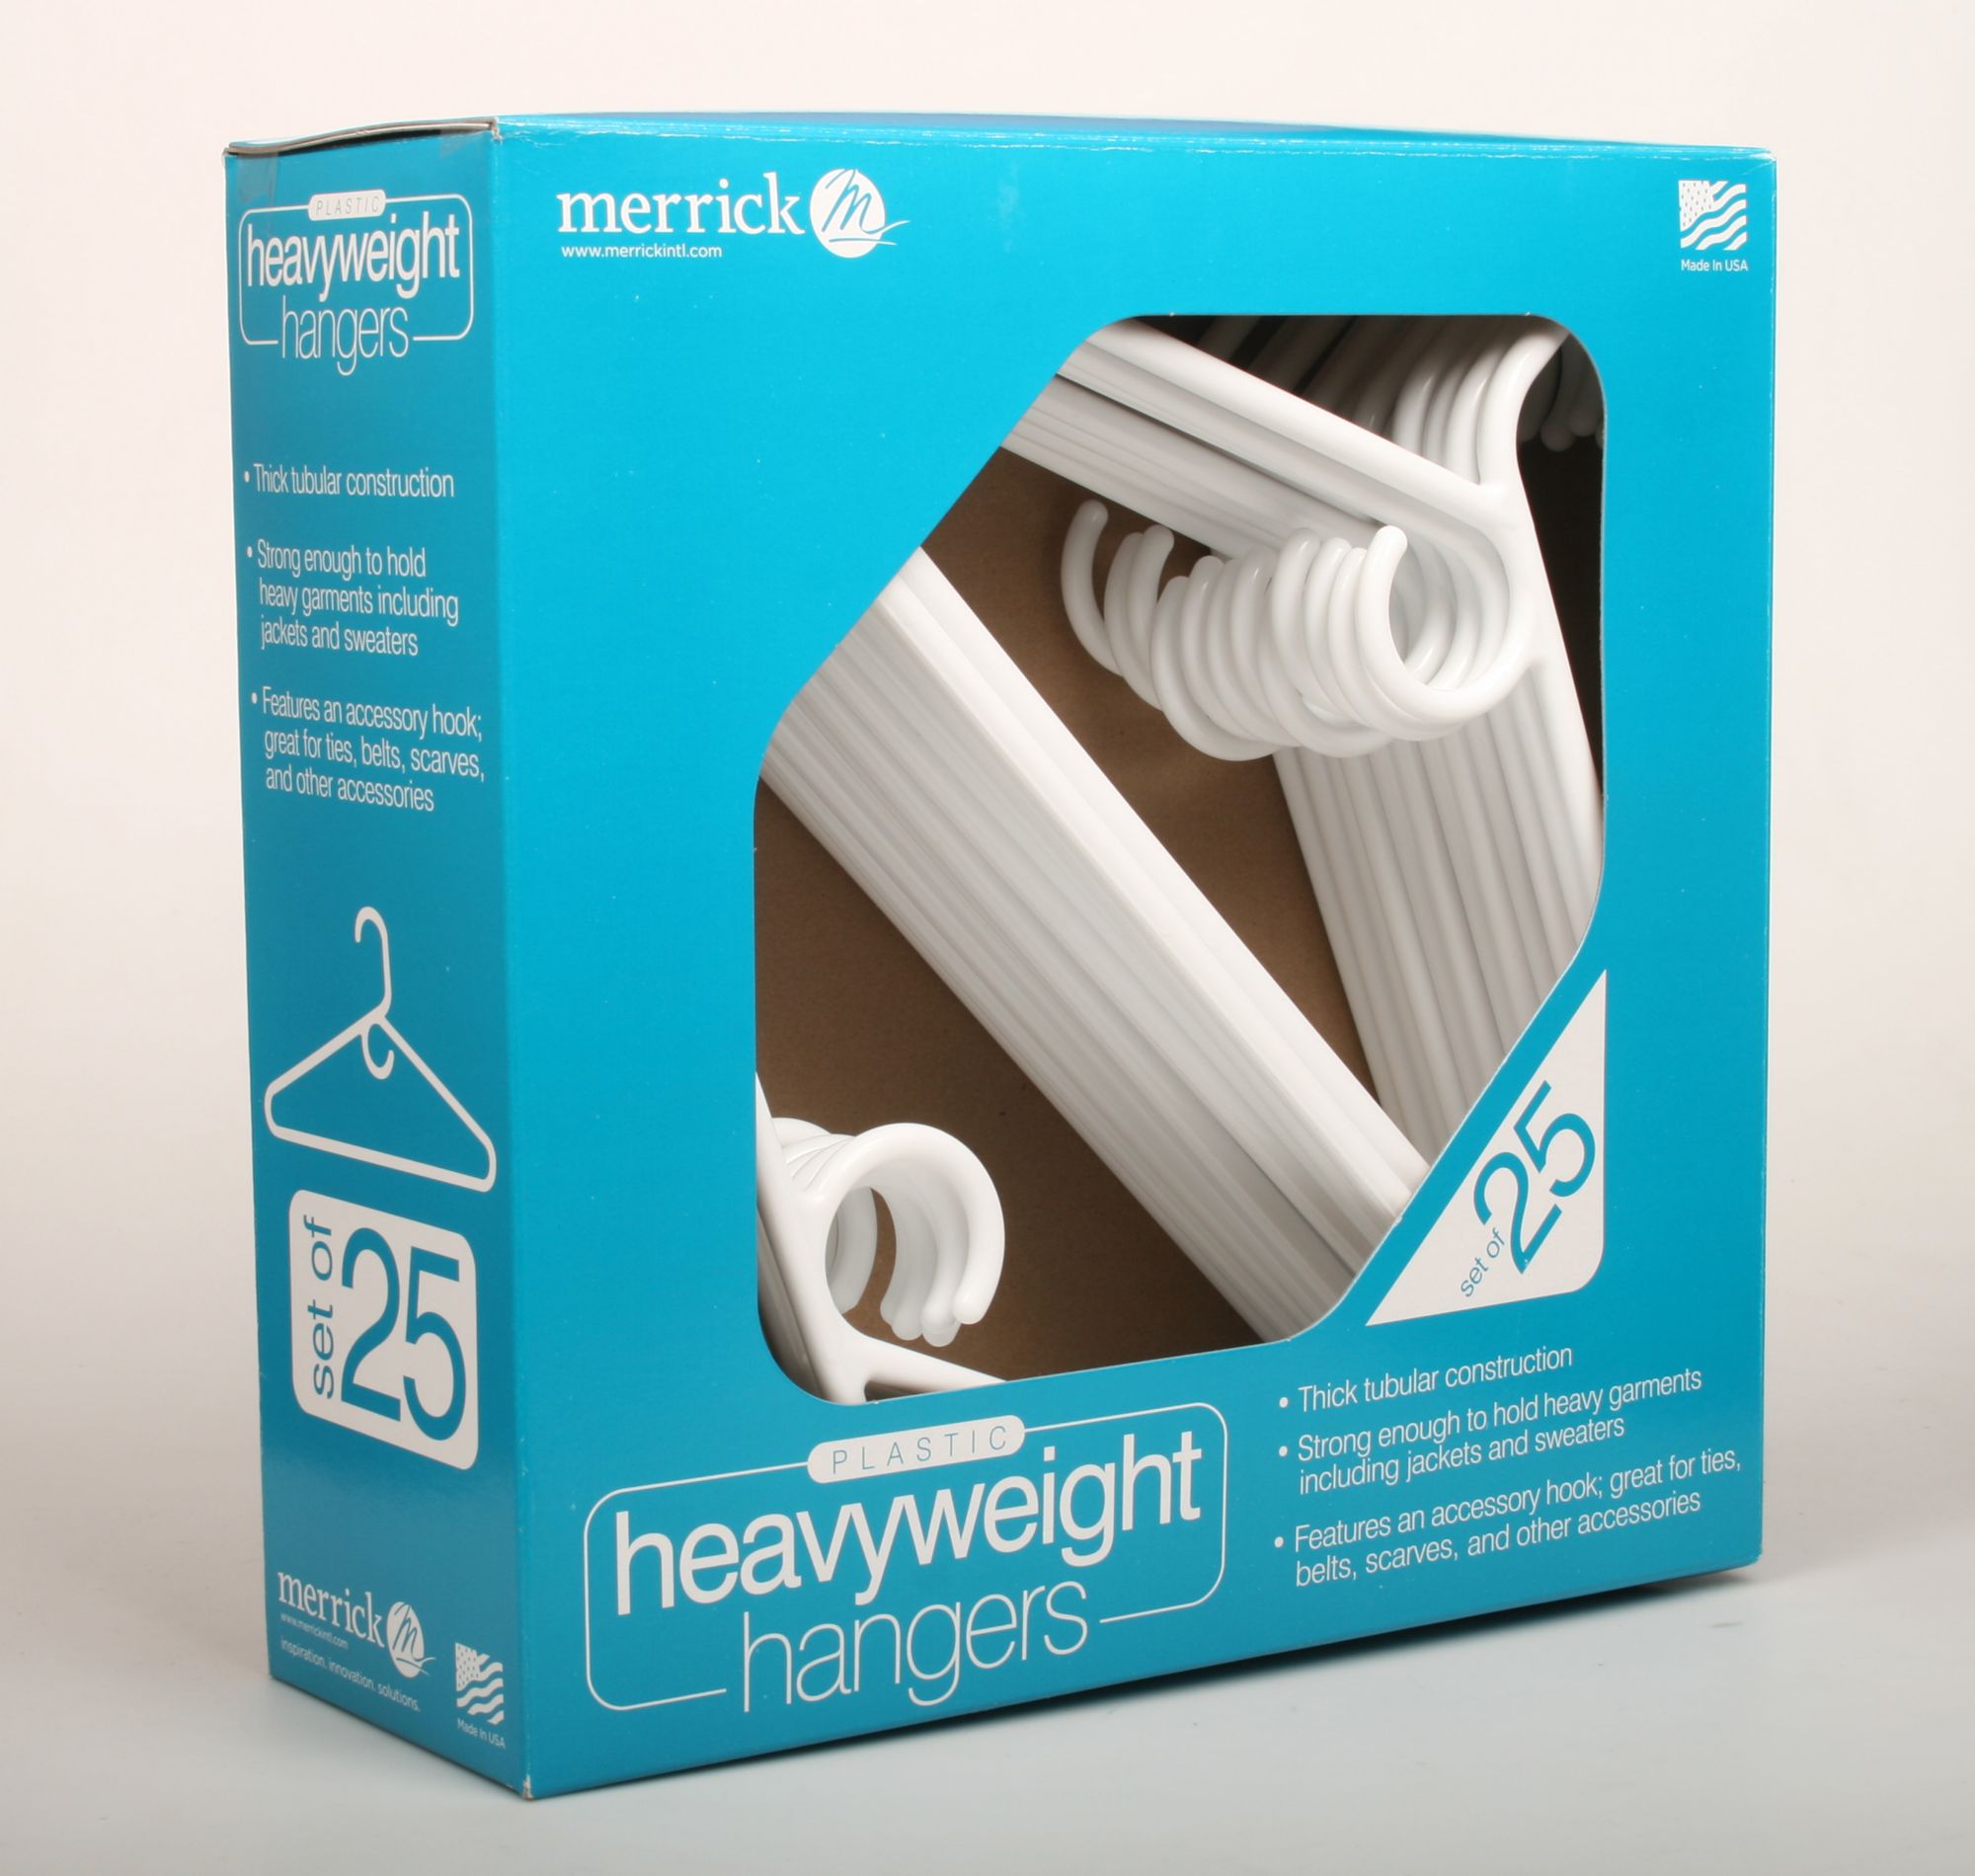 Merrick Heavyweight Plastic Hangers, 25 pk. - White